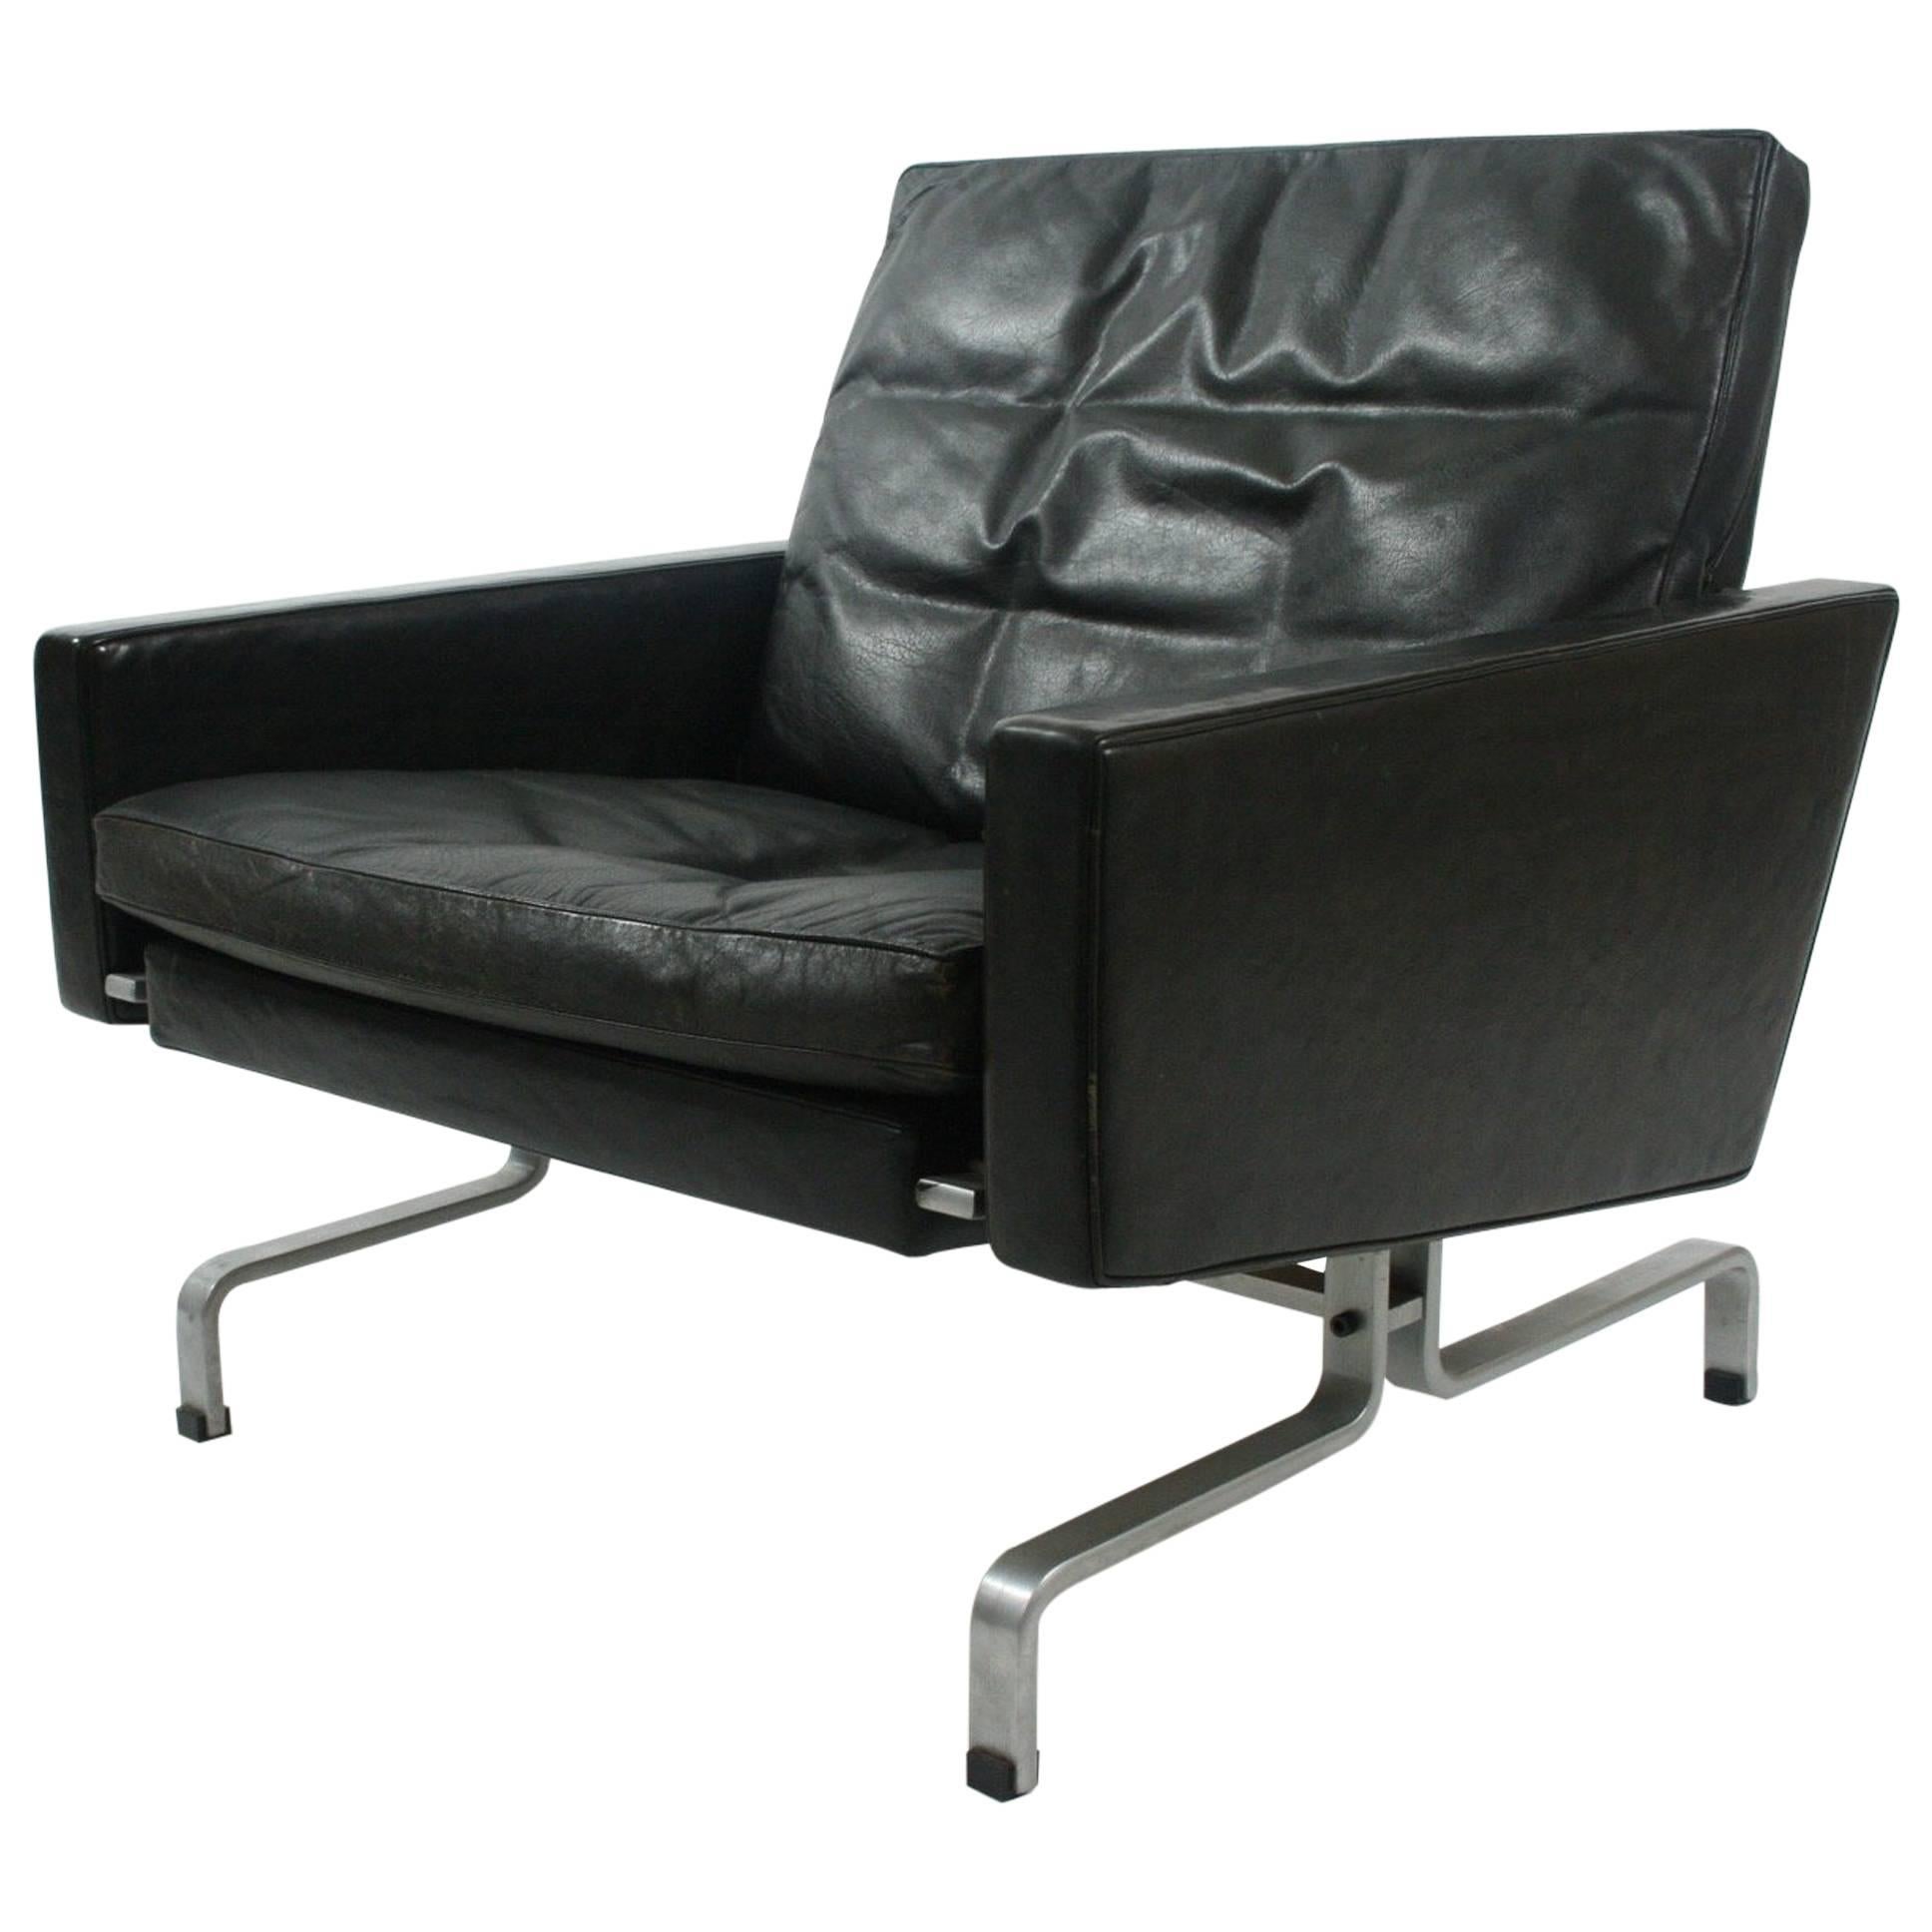 Poul Kjærholm PK-31/1 Lounge Chair by E. Kold Christensen in Black Leather